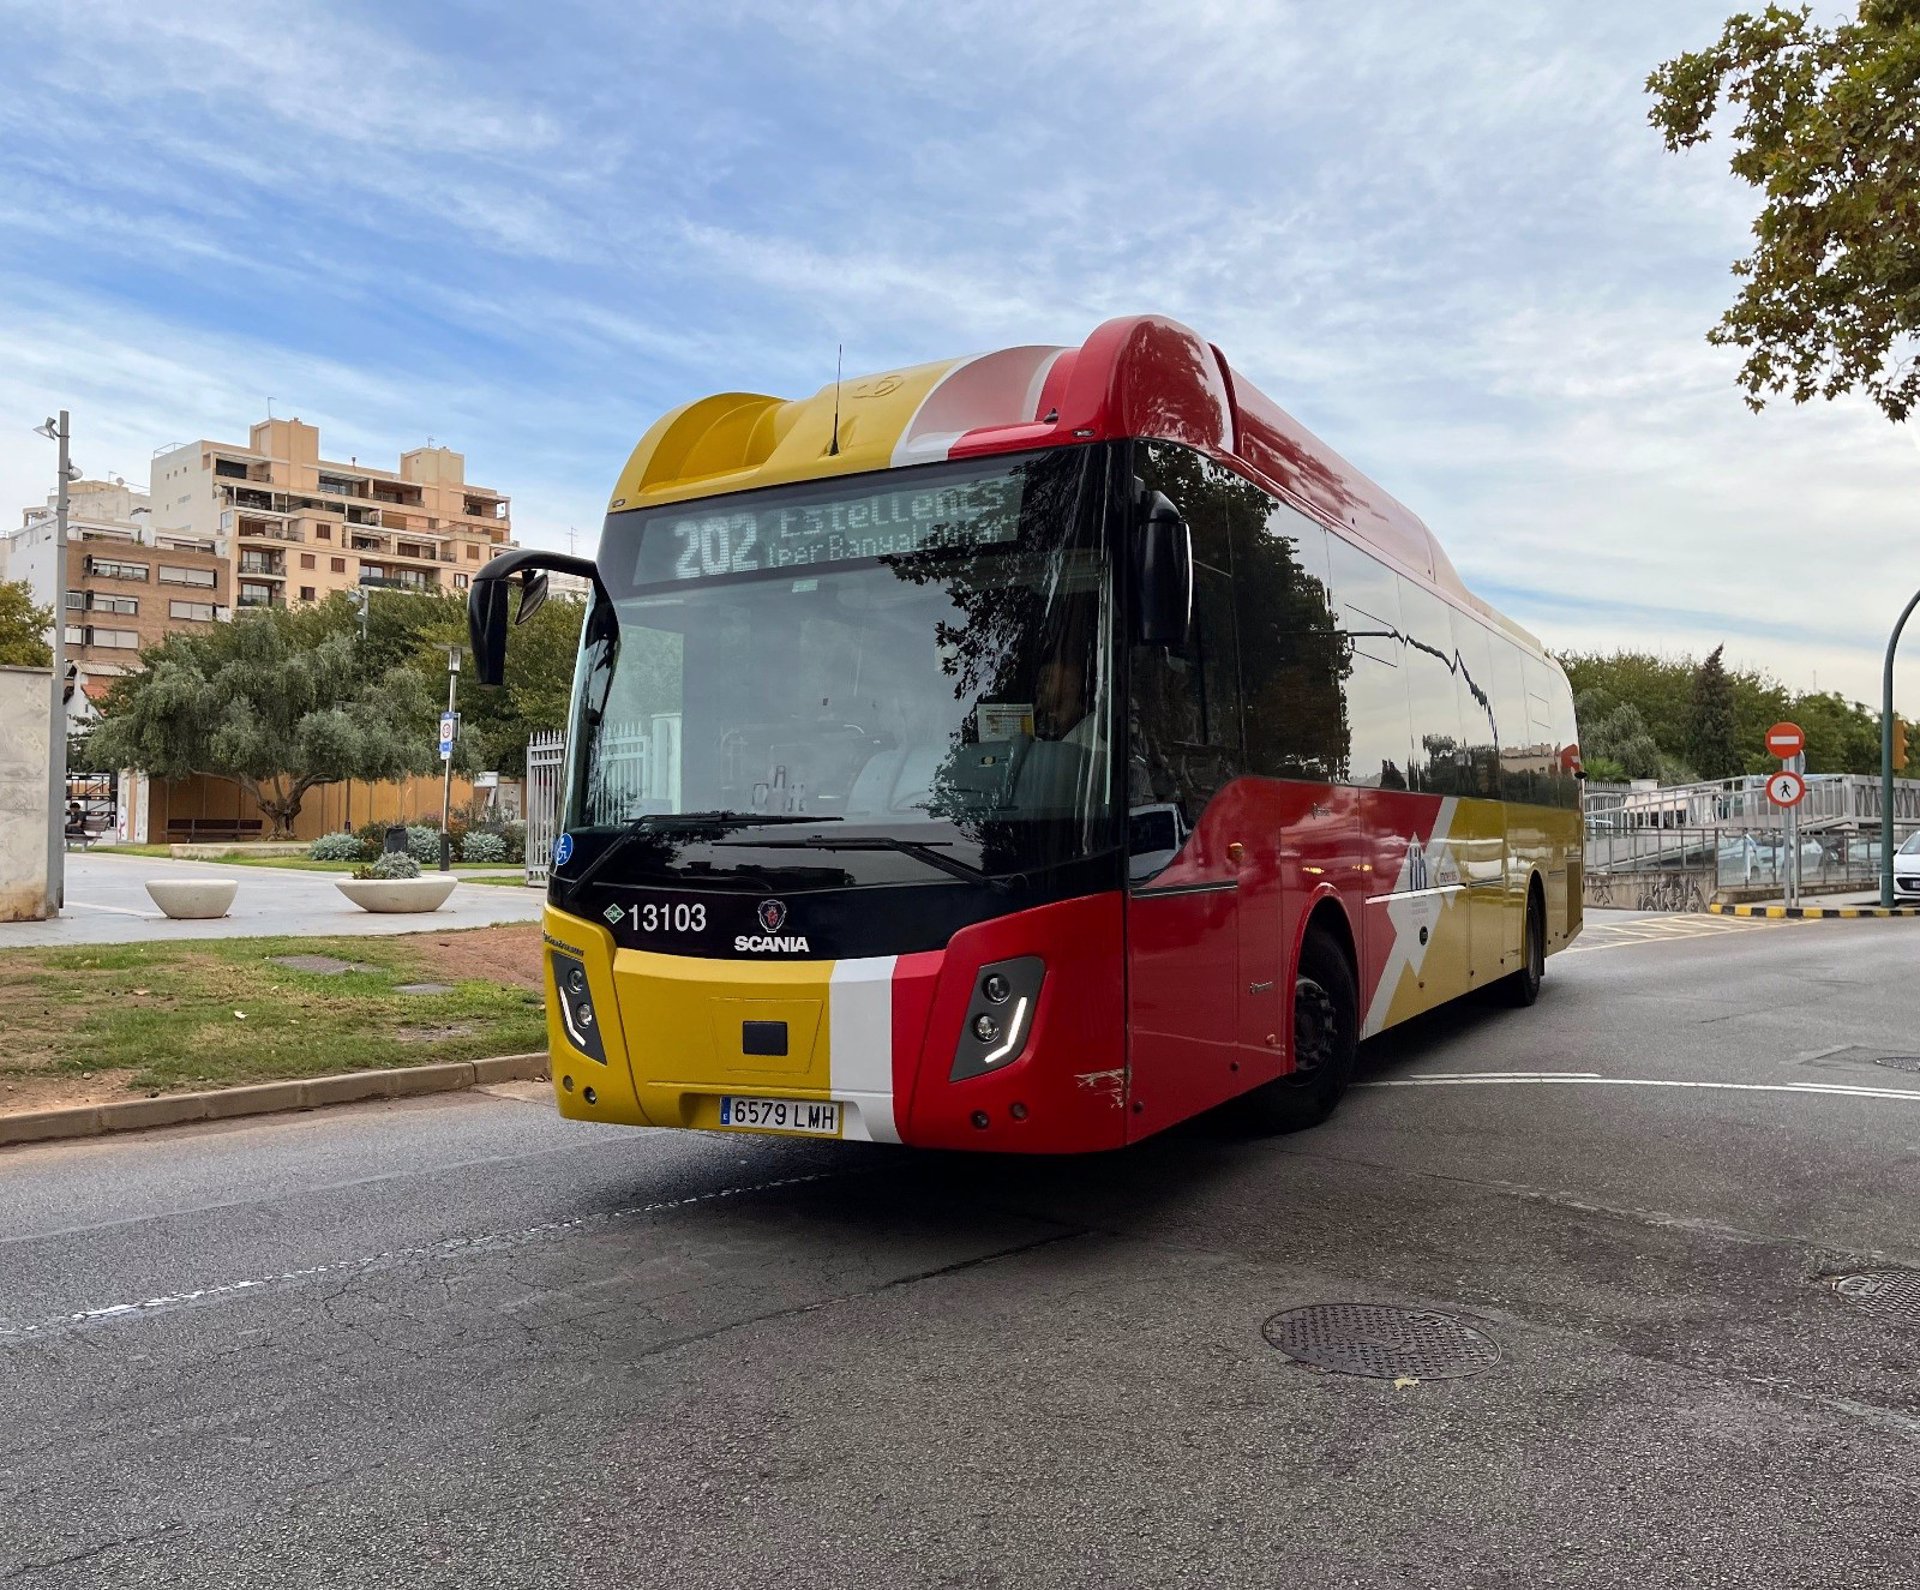 Un autobús de la línea 202 del TIB que une Palma y Estellencs. - CONSELLERIA DE VIVIENDA, TERRITORIO Y MOVILIDAD